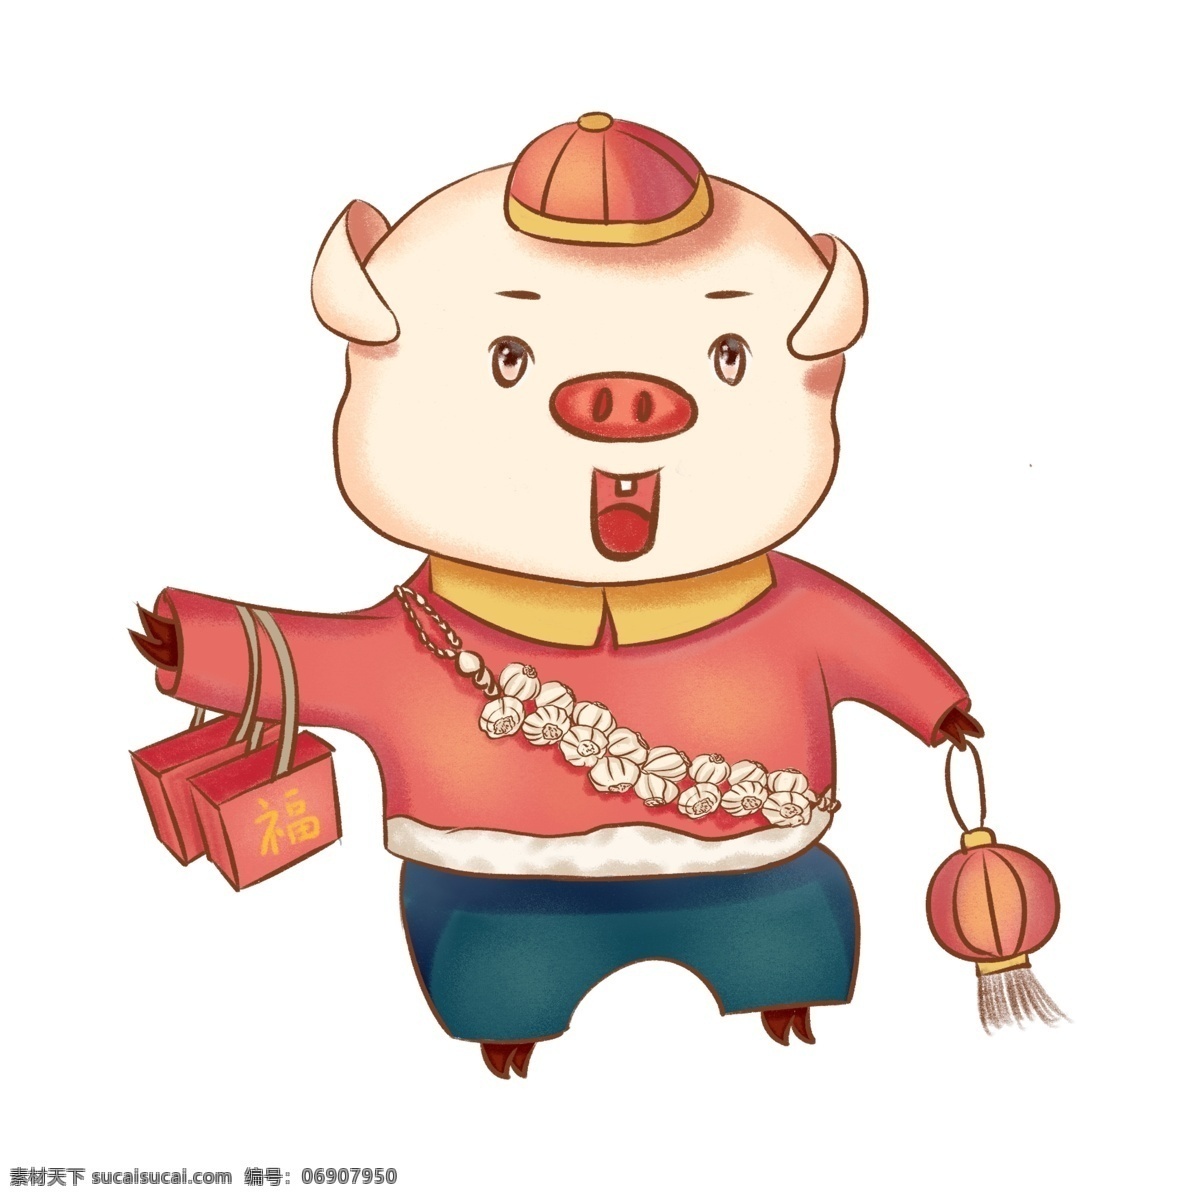 2019 猪年 传统 习俗 买 年货 卡通手绘 可爱小猪 猪买年货 猪买灯笼 猪买大蒜 买年货的小猪 手提 灯笼 小 猪